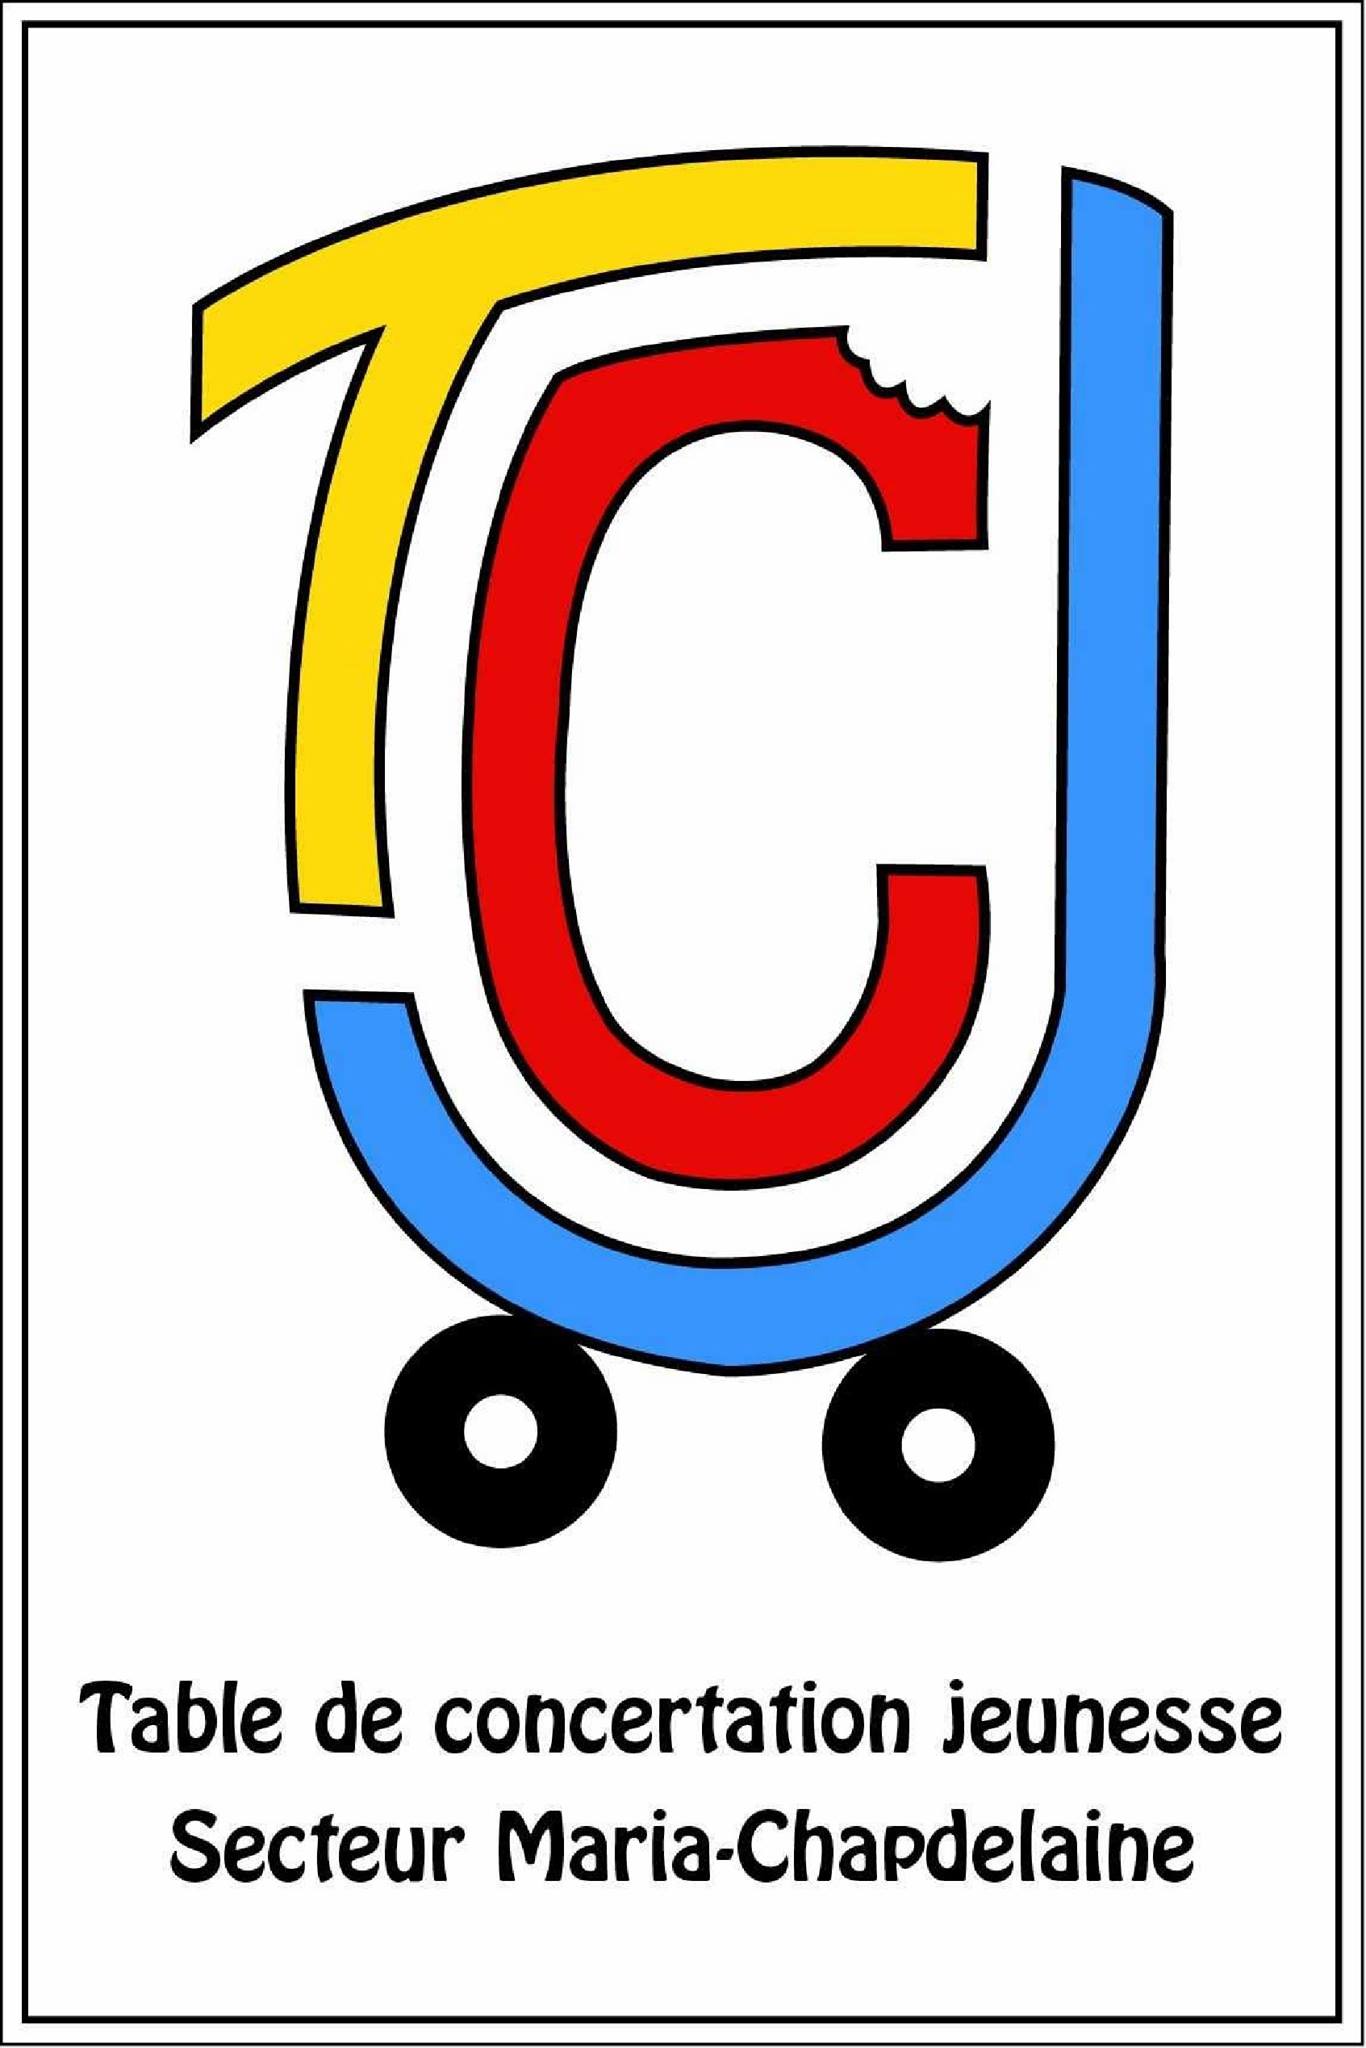 Table de concertation jeunesse (TCJ)